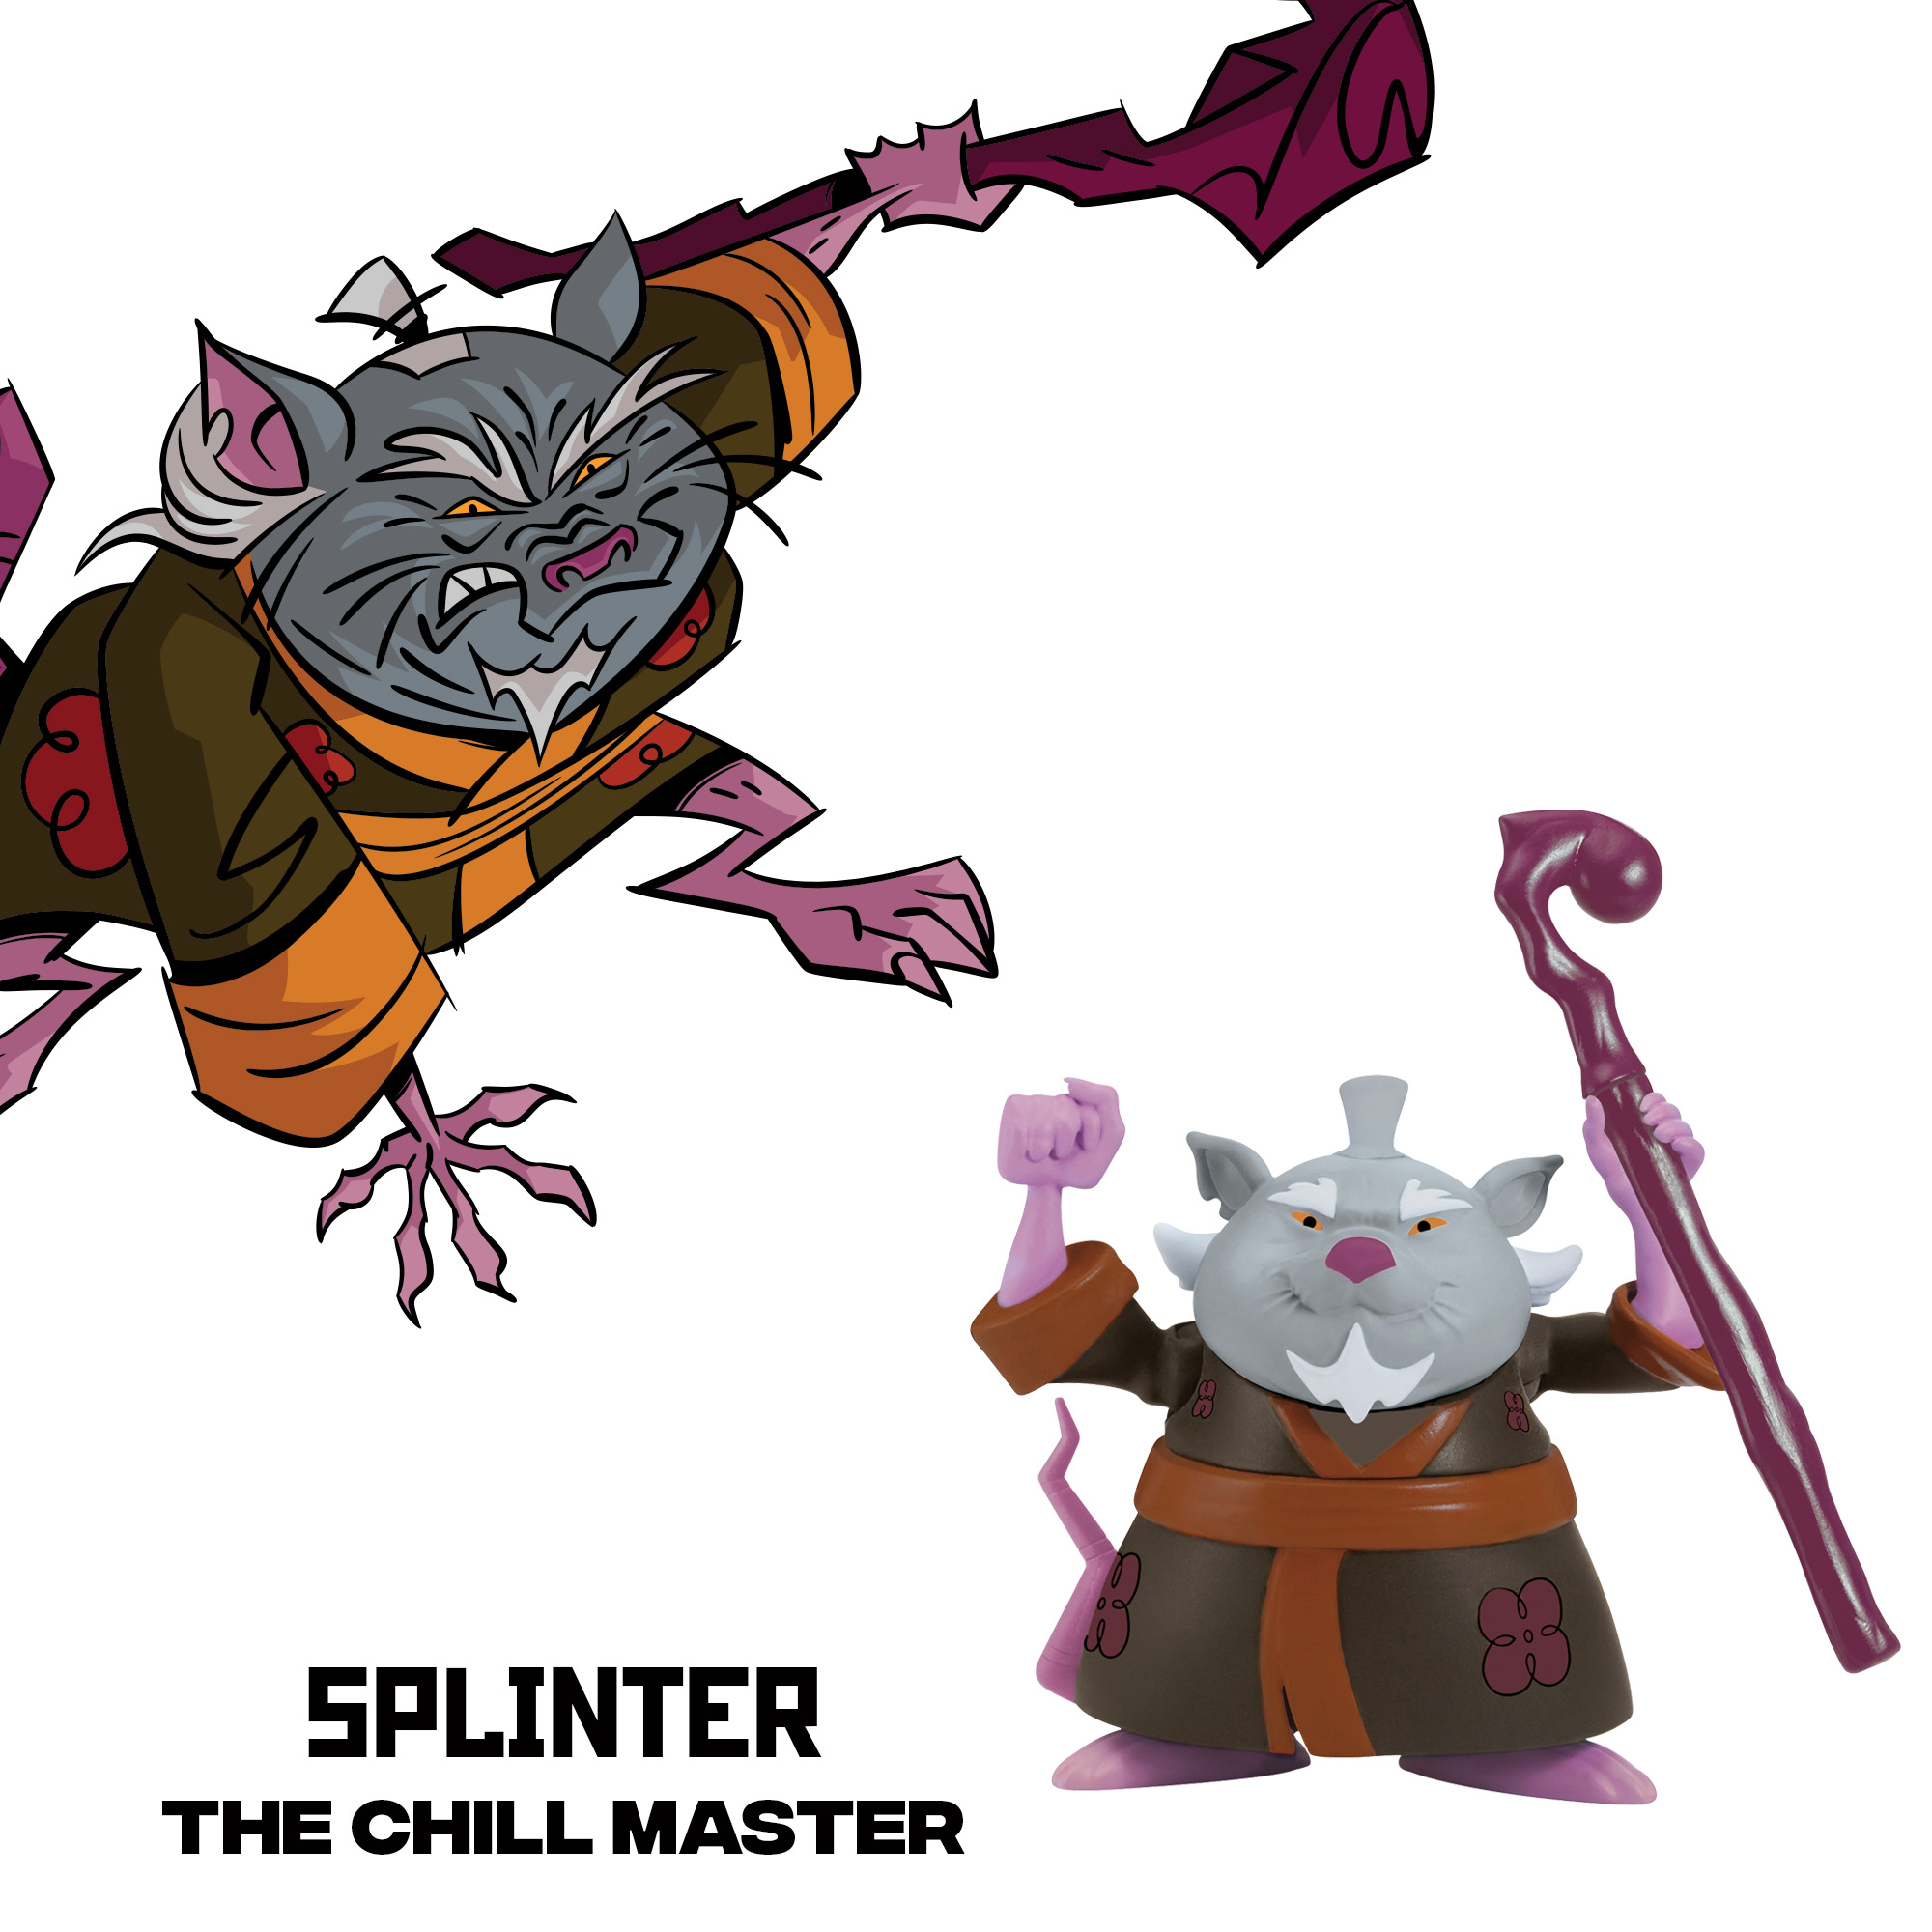 Rise of the teenage mutant ninja turtle splinter action figure - image 5 of 5